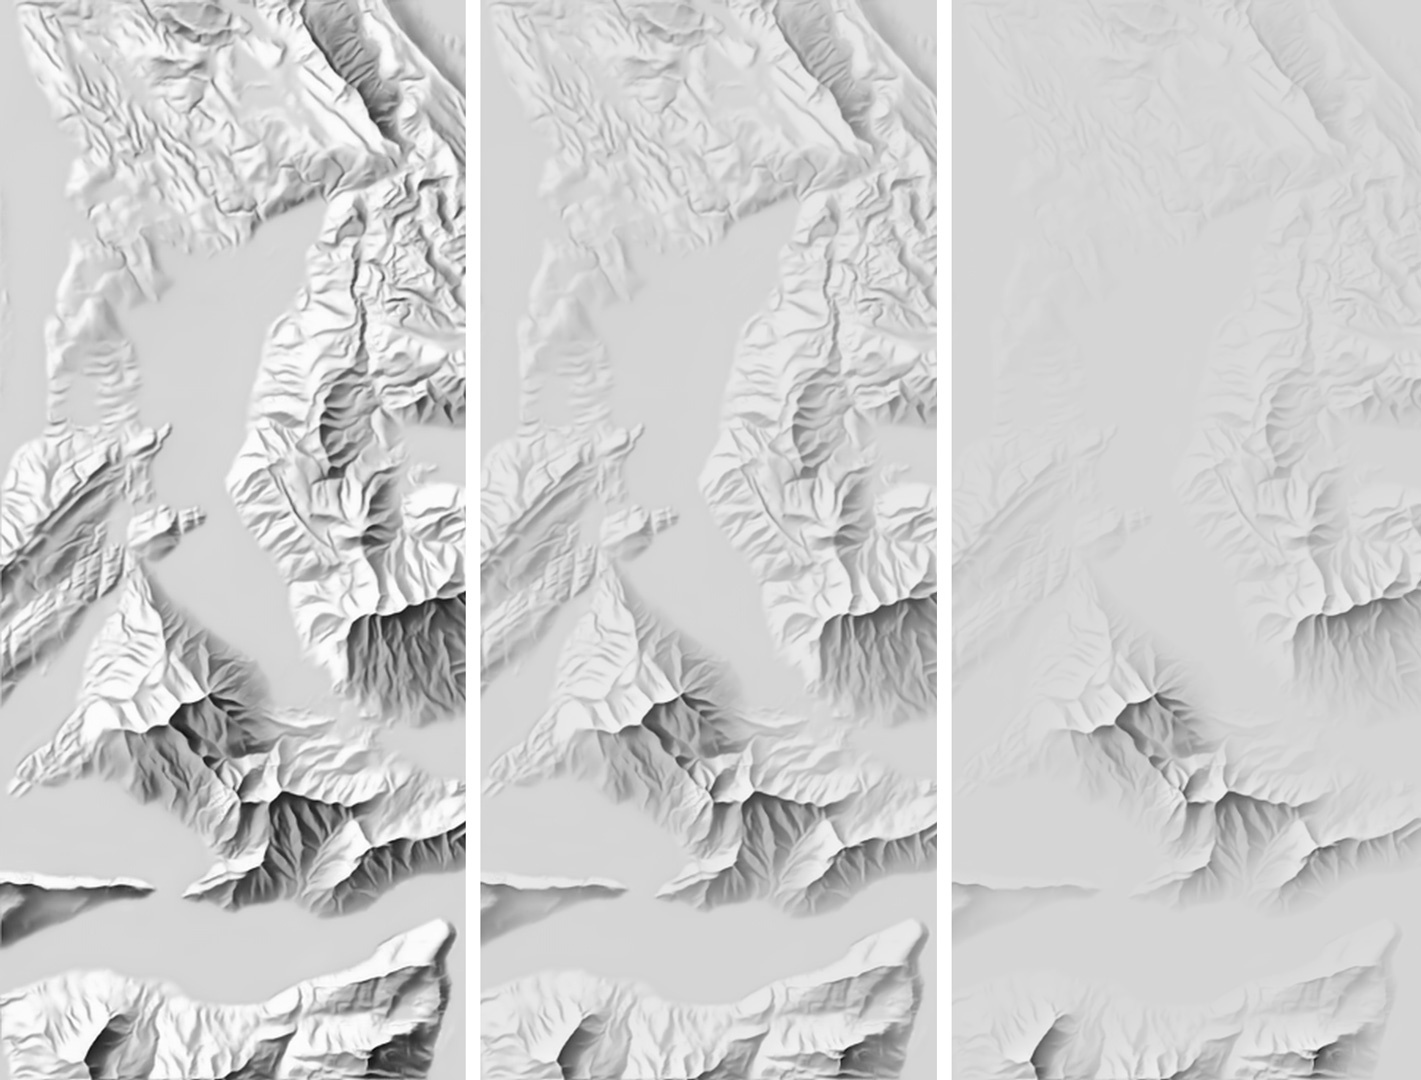 Aerial perspective increasing (Rigi, Switzerland)